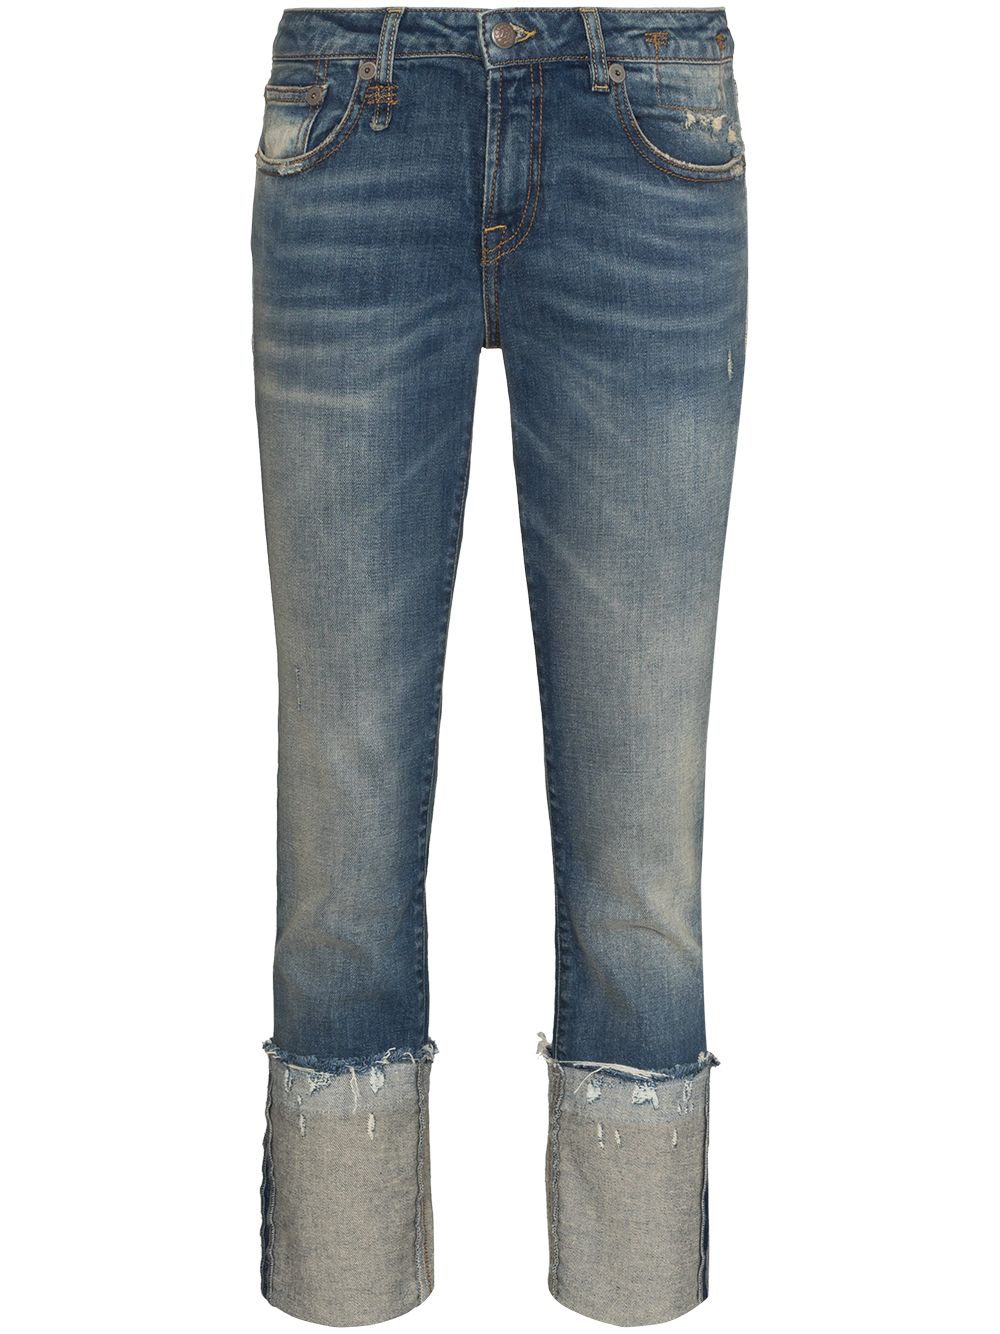 фото R13 укороченные джинсы скинни kate с эффектом потертости